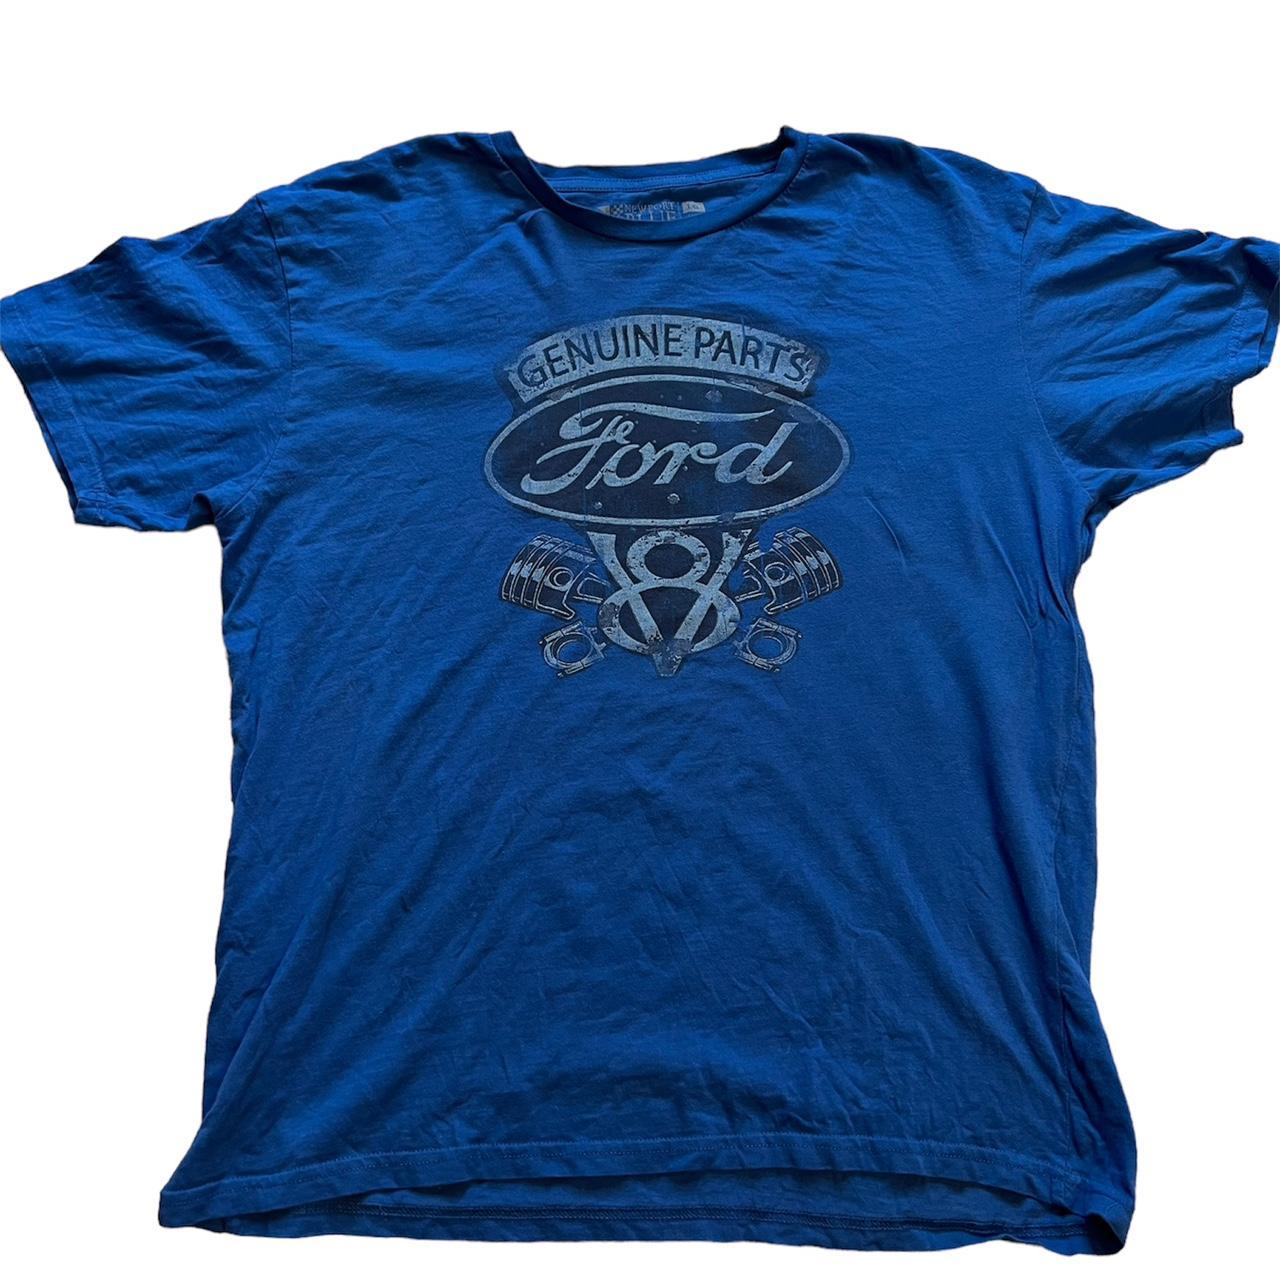 Men’s Ford vintage blue graphic T-shirt Size L Open... - Depop